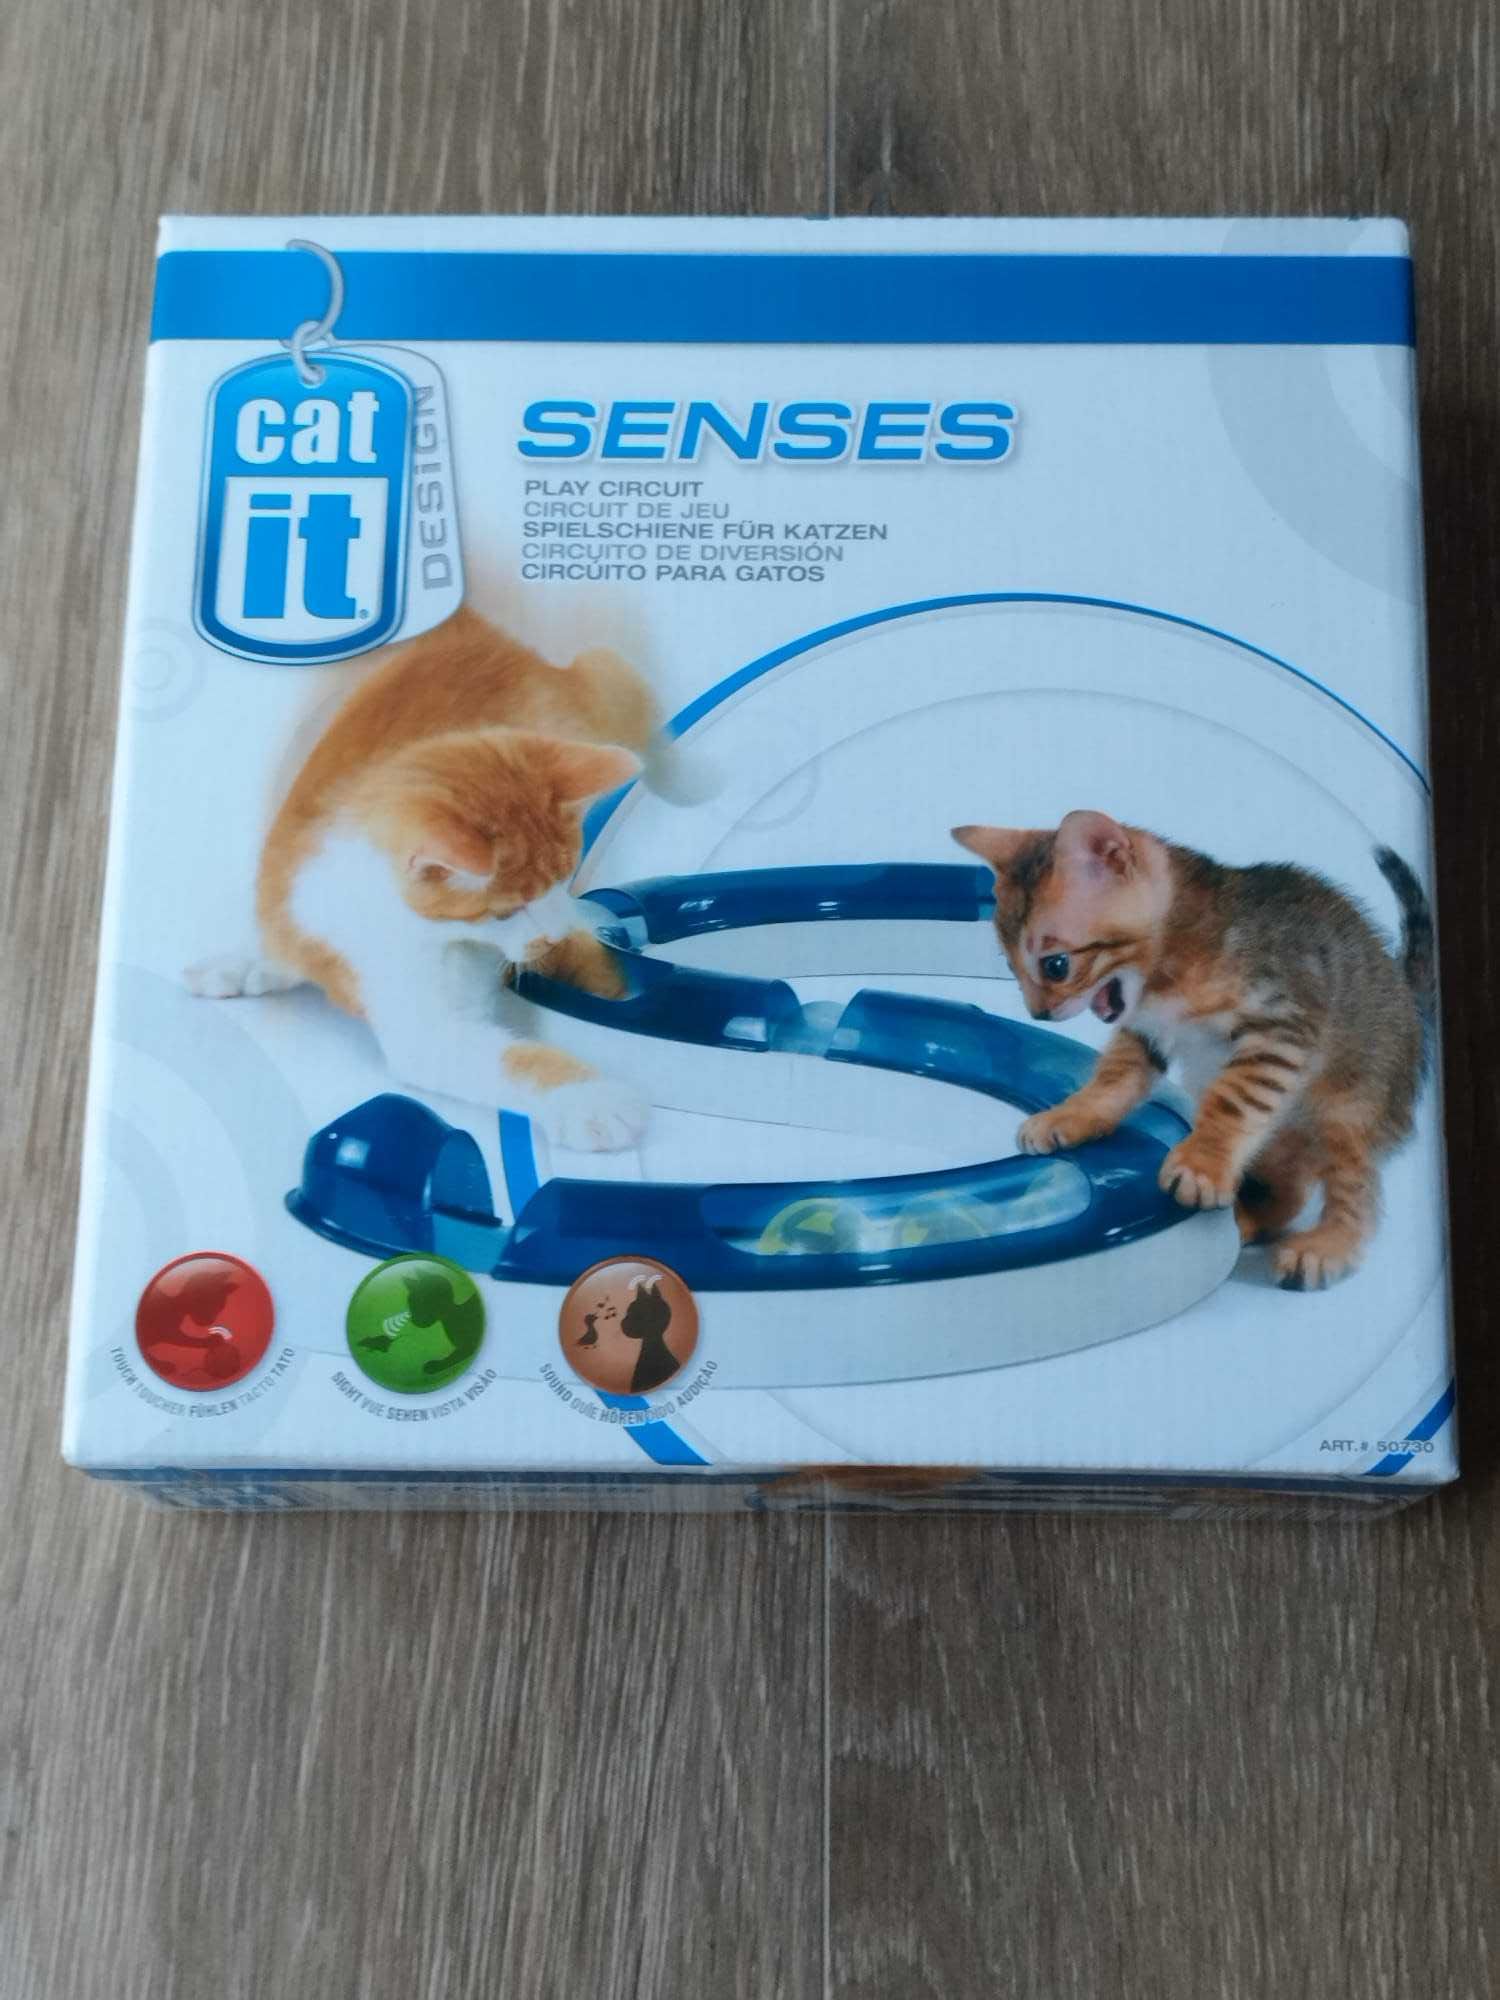 Circuito para gatos Cat it Design senses - Brinquedo gato